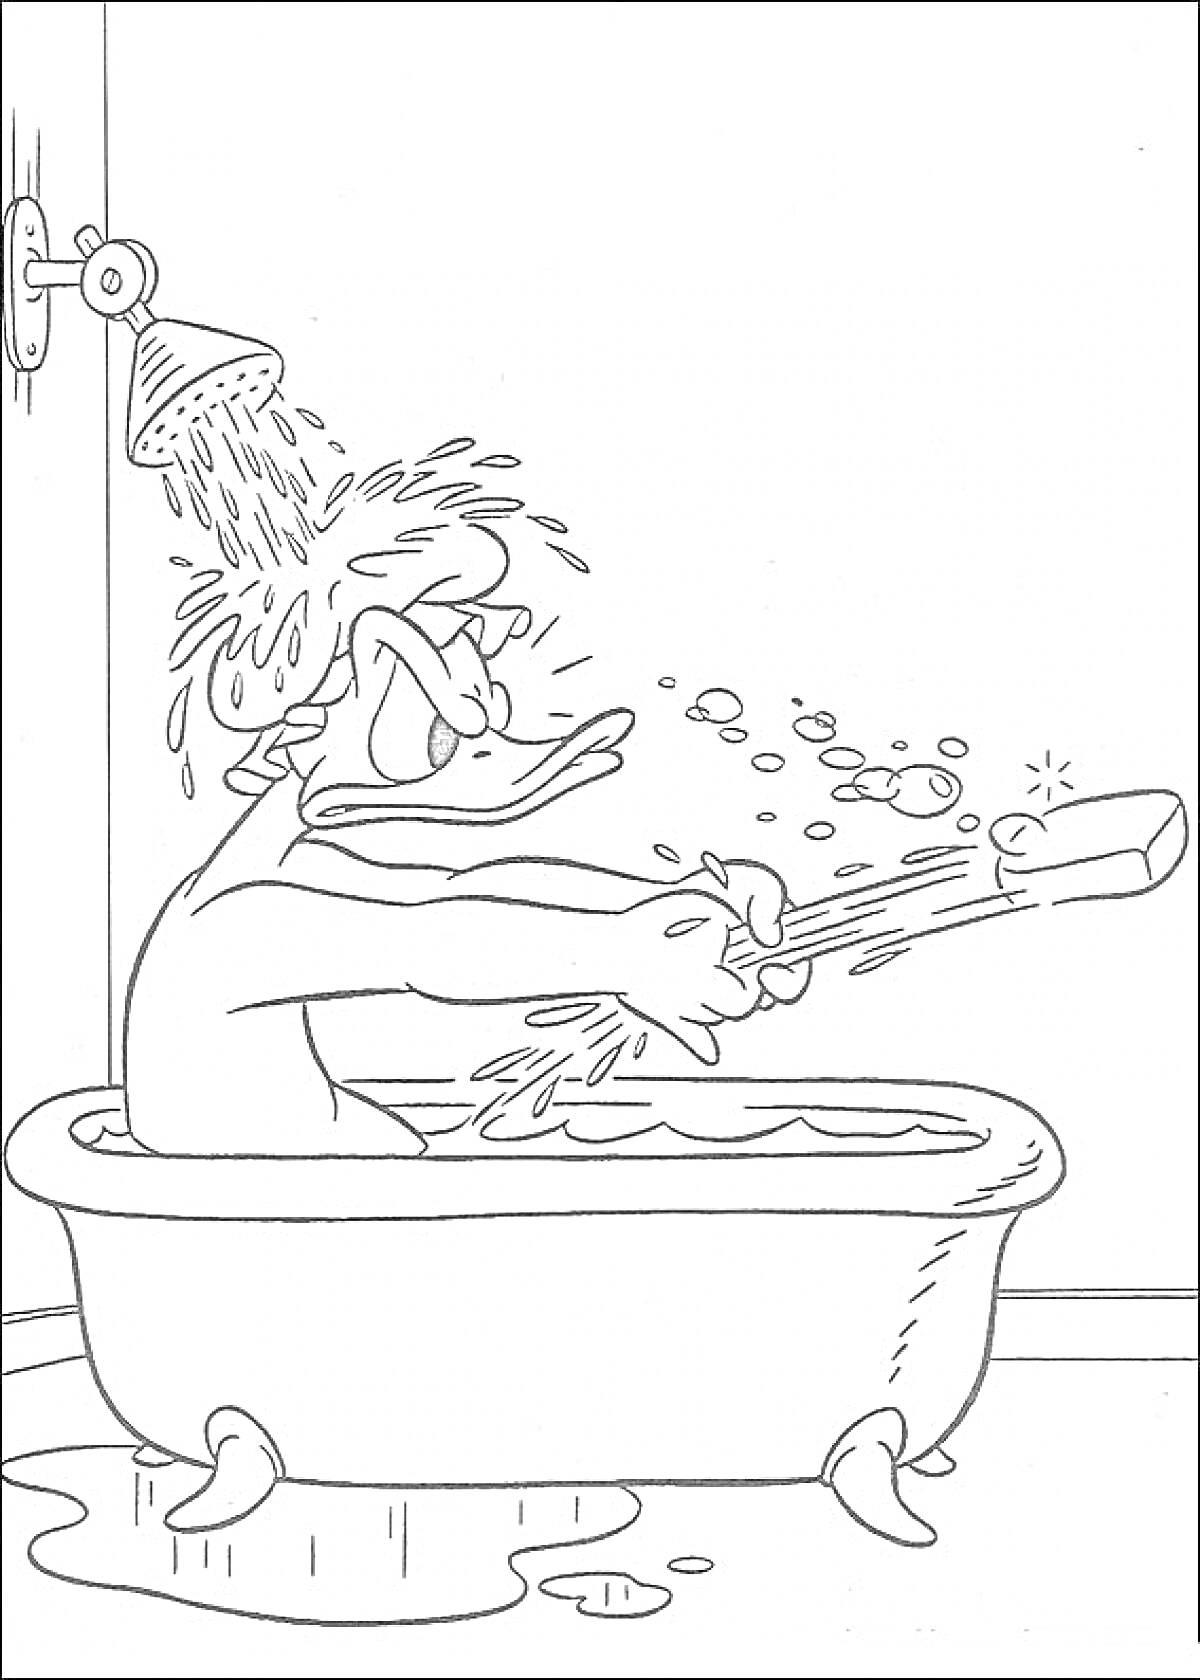 Дональд Дак принимает ванну, сидя в ванне и держит в руках щетку, из душа льется вода, на полу лужа